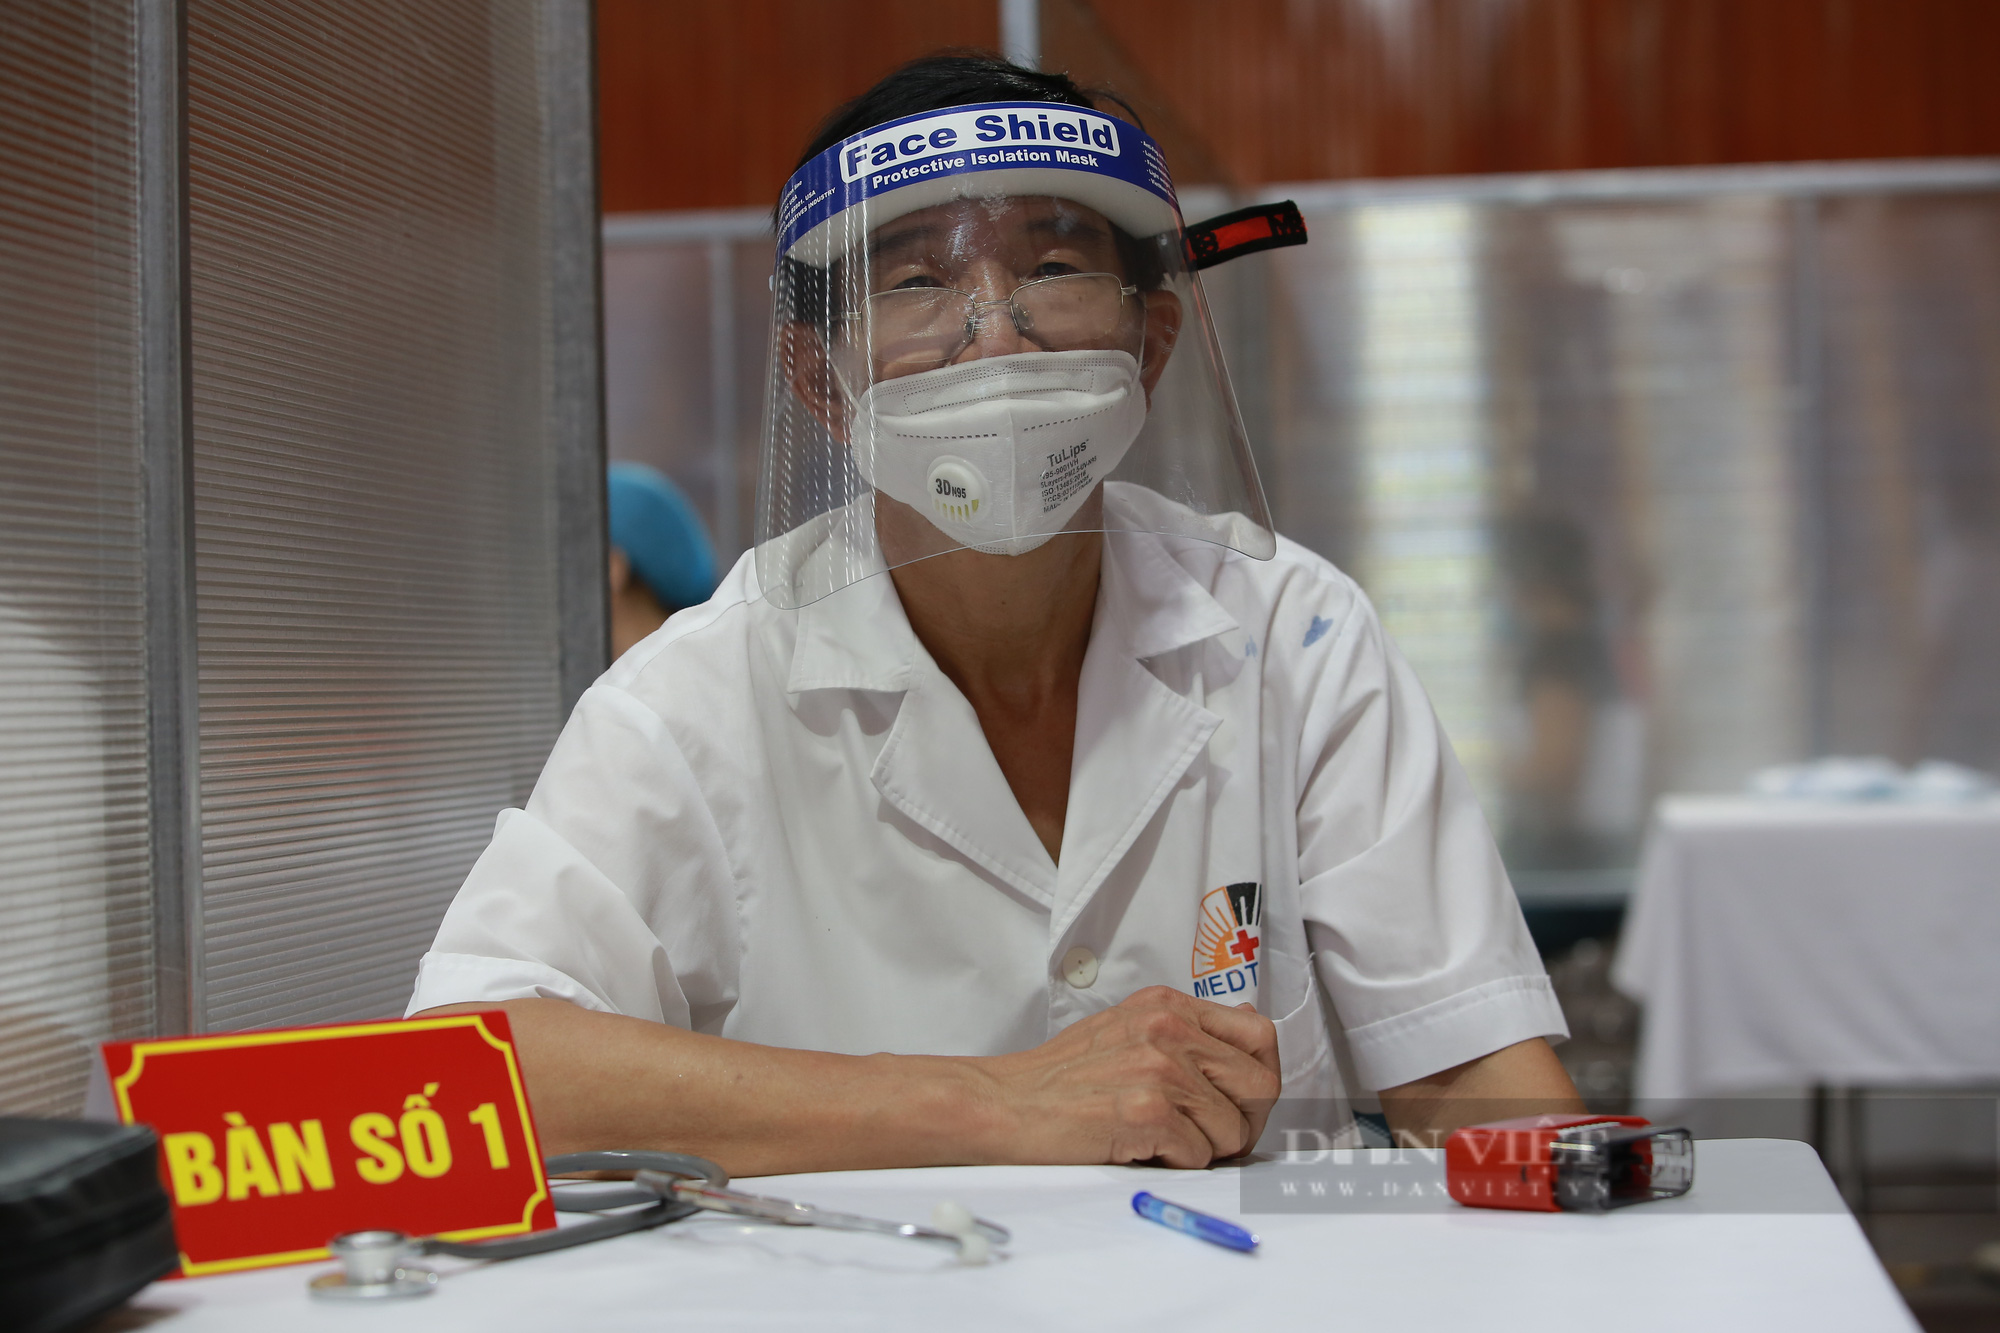 Hà Nội: Nữ bác sĩ về hưu xung phong tham gia vào cuộc chạy đua tiêm vaccine chống dịch Covid-19 - Ảnh 6.